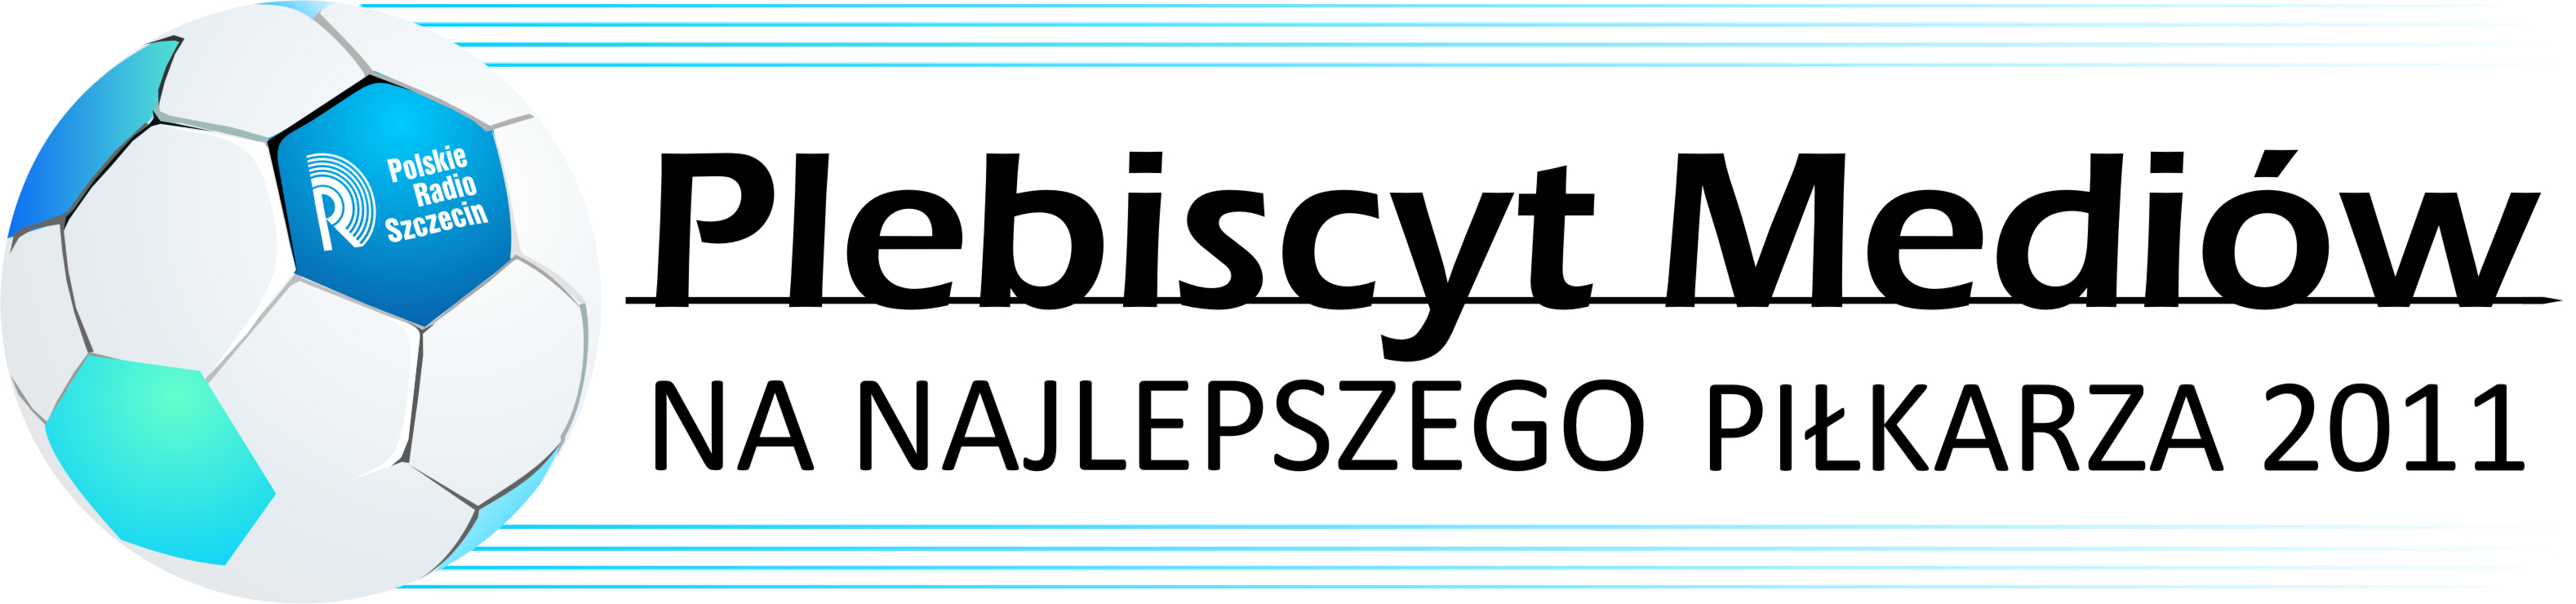 Plebiscyt mediow  2012-logo